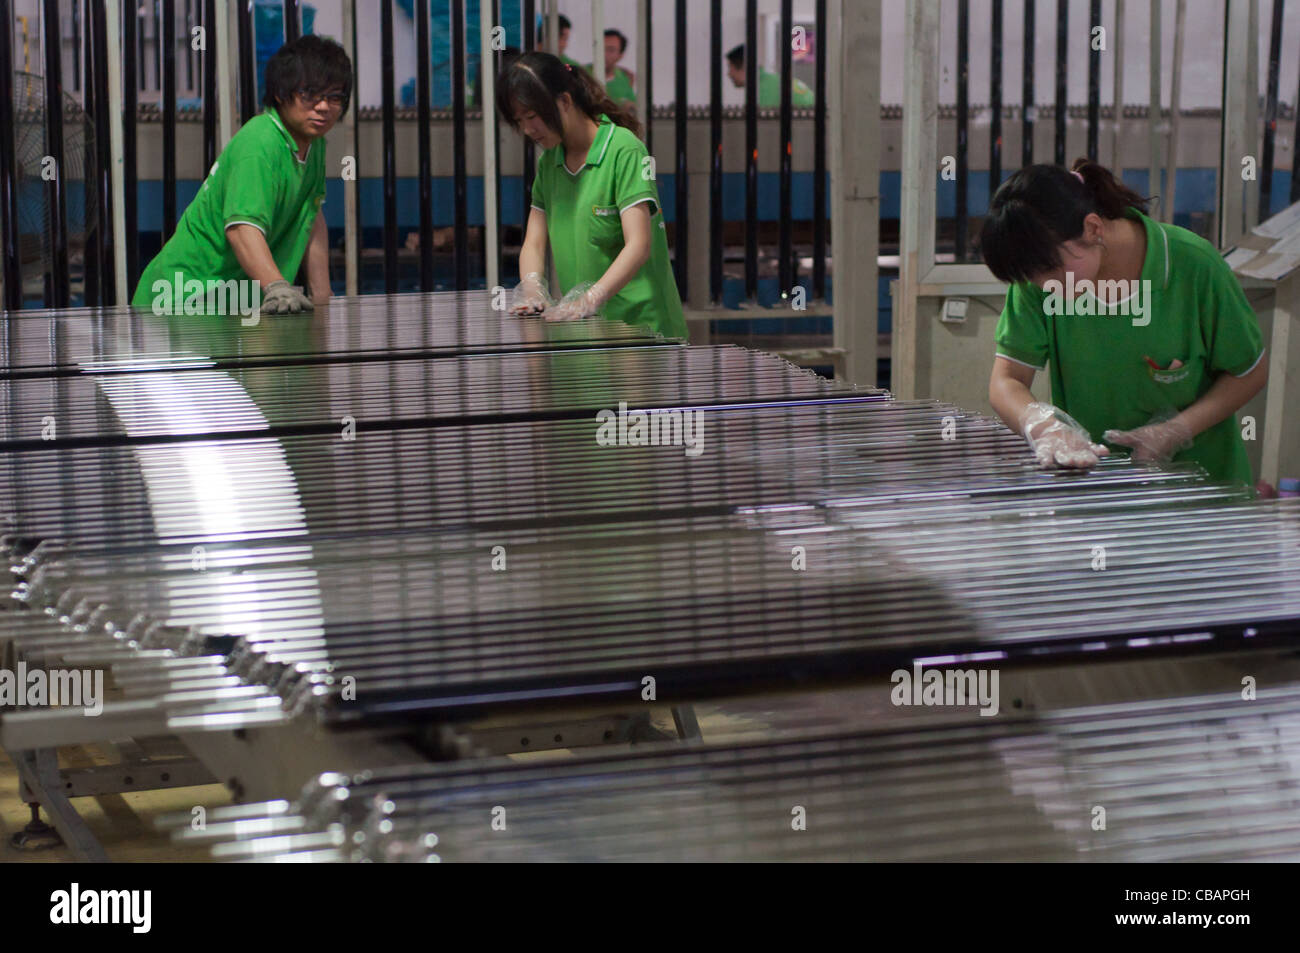 I lavoratori della Himin Solar Corporation, azienda cinese leader nella produzione di scaldabagni solari. China Solar Valley, Dezhou, Shandong, Cina Foto Stock